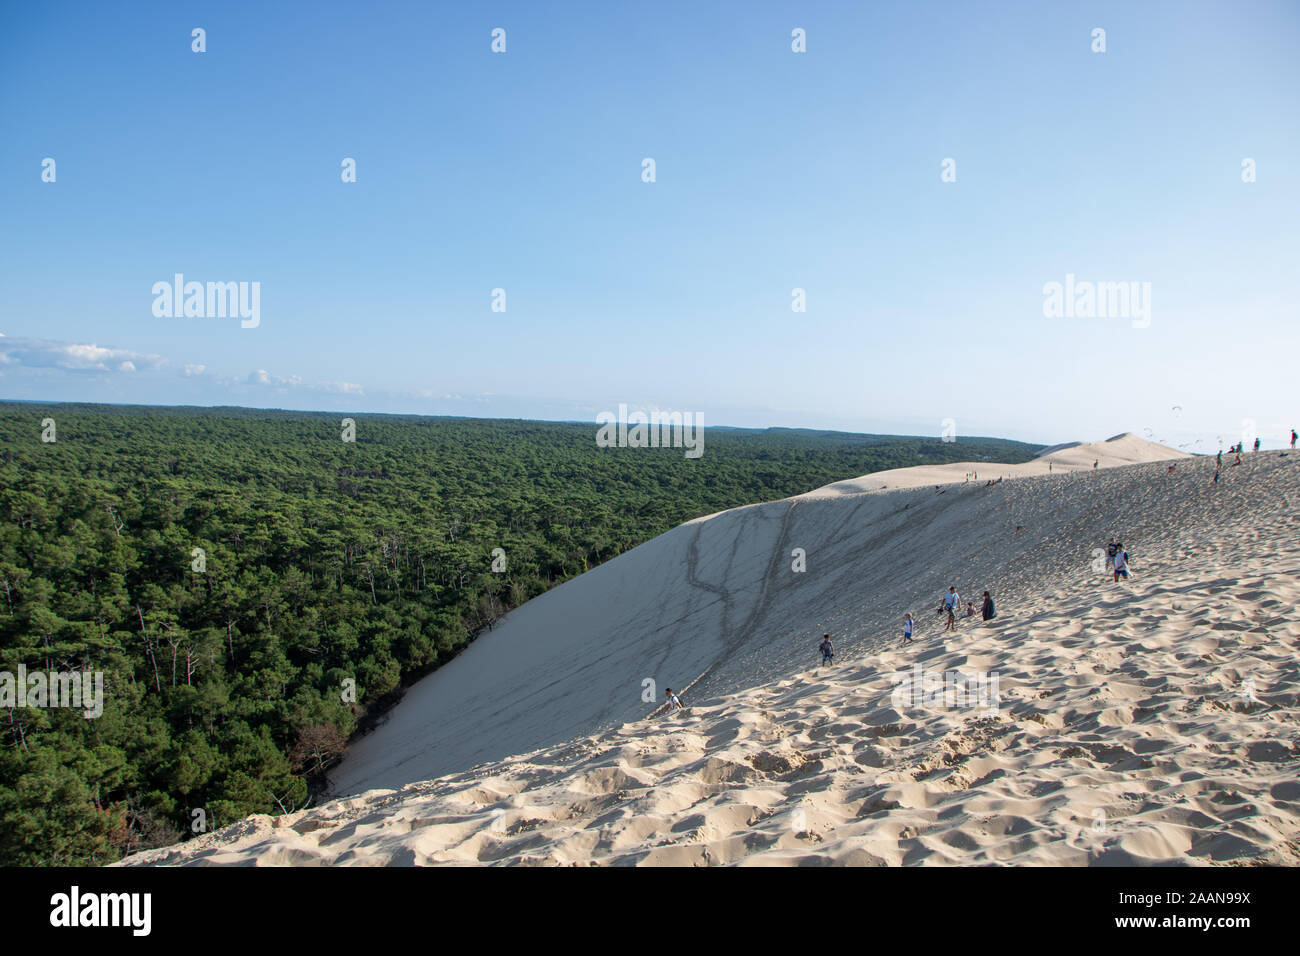 Vue sur la plage de sable de dune du Pilat et du bassin d'arcachon en france, aquitaine. Banque D'Images